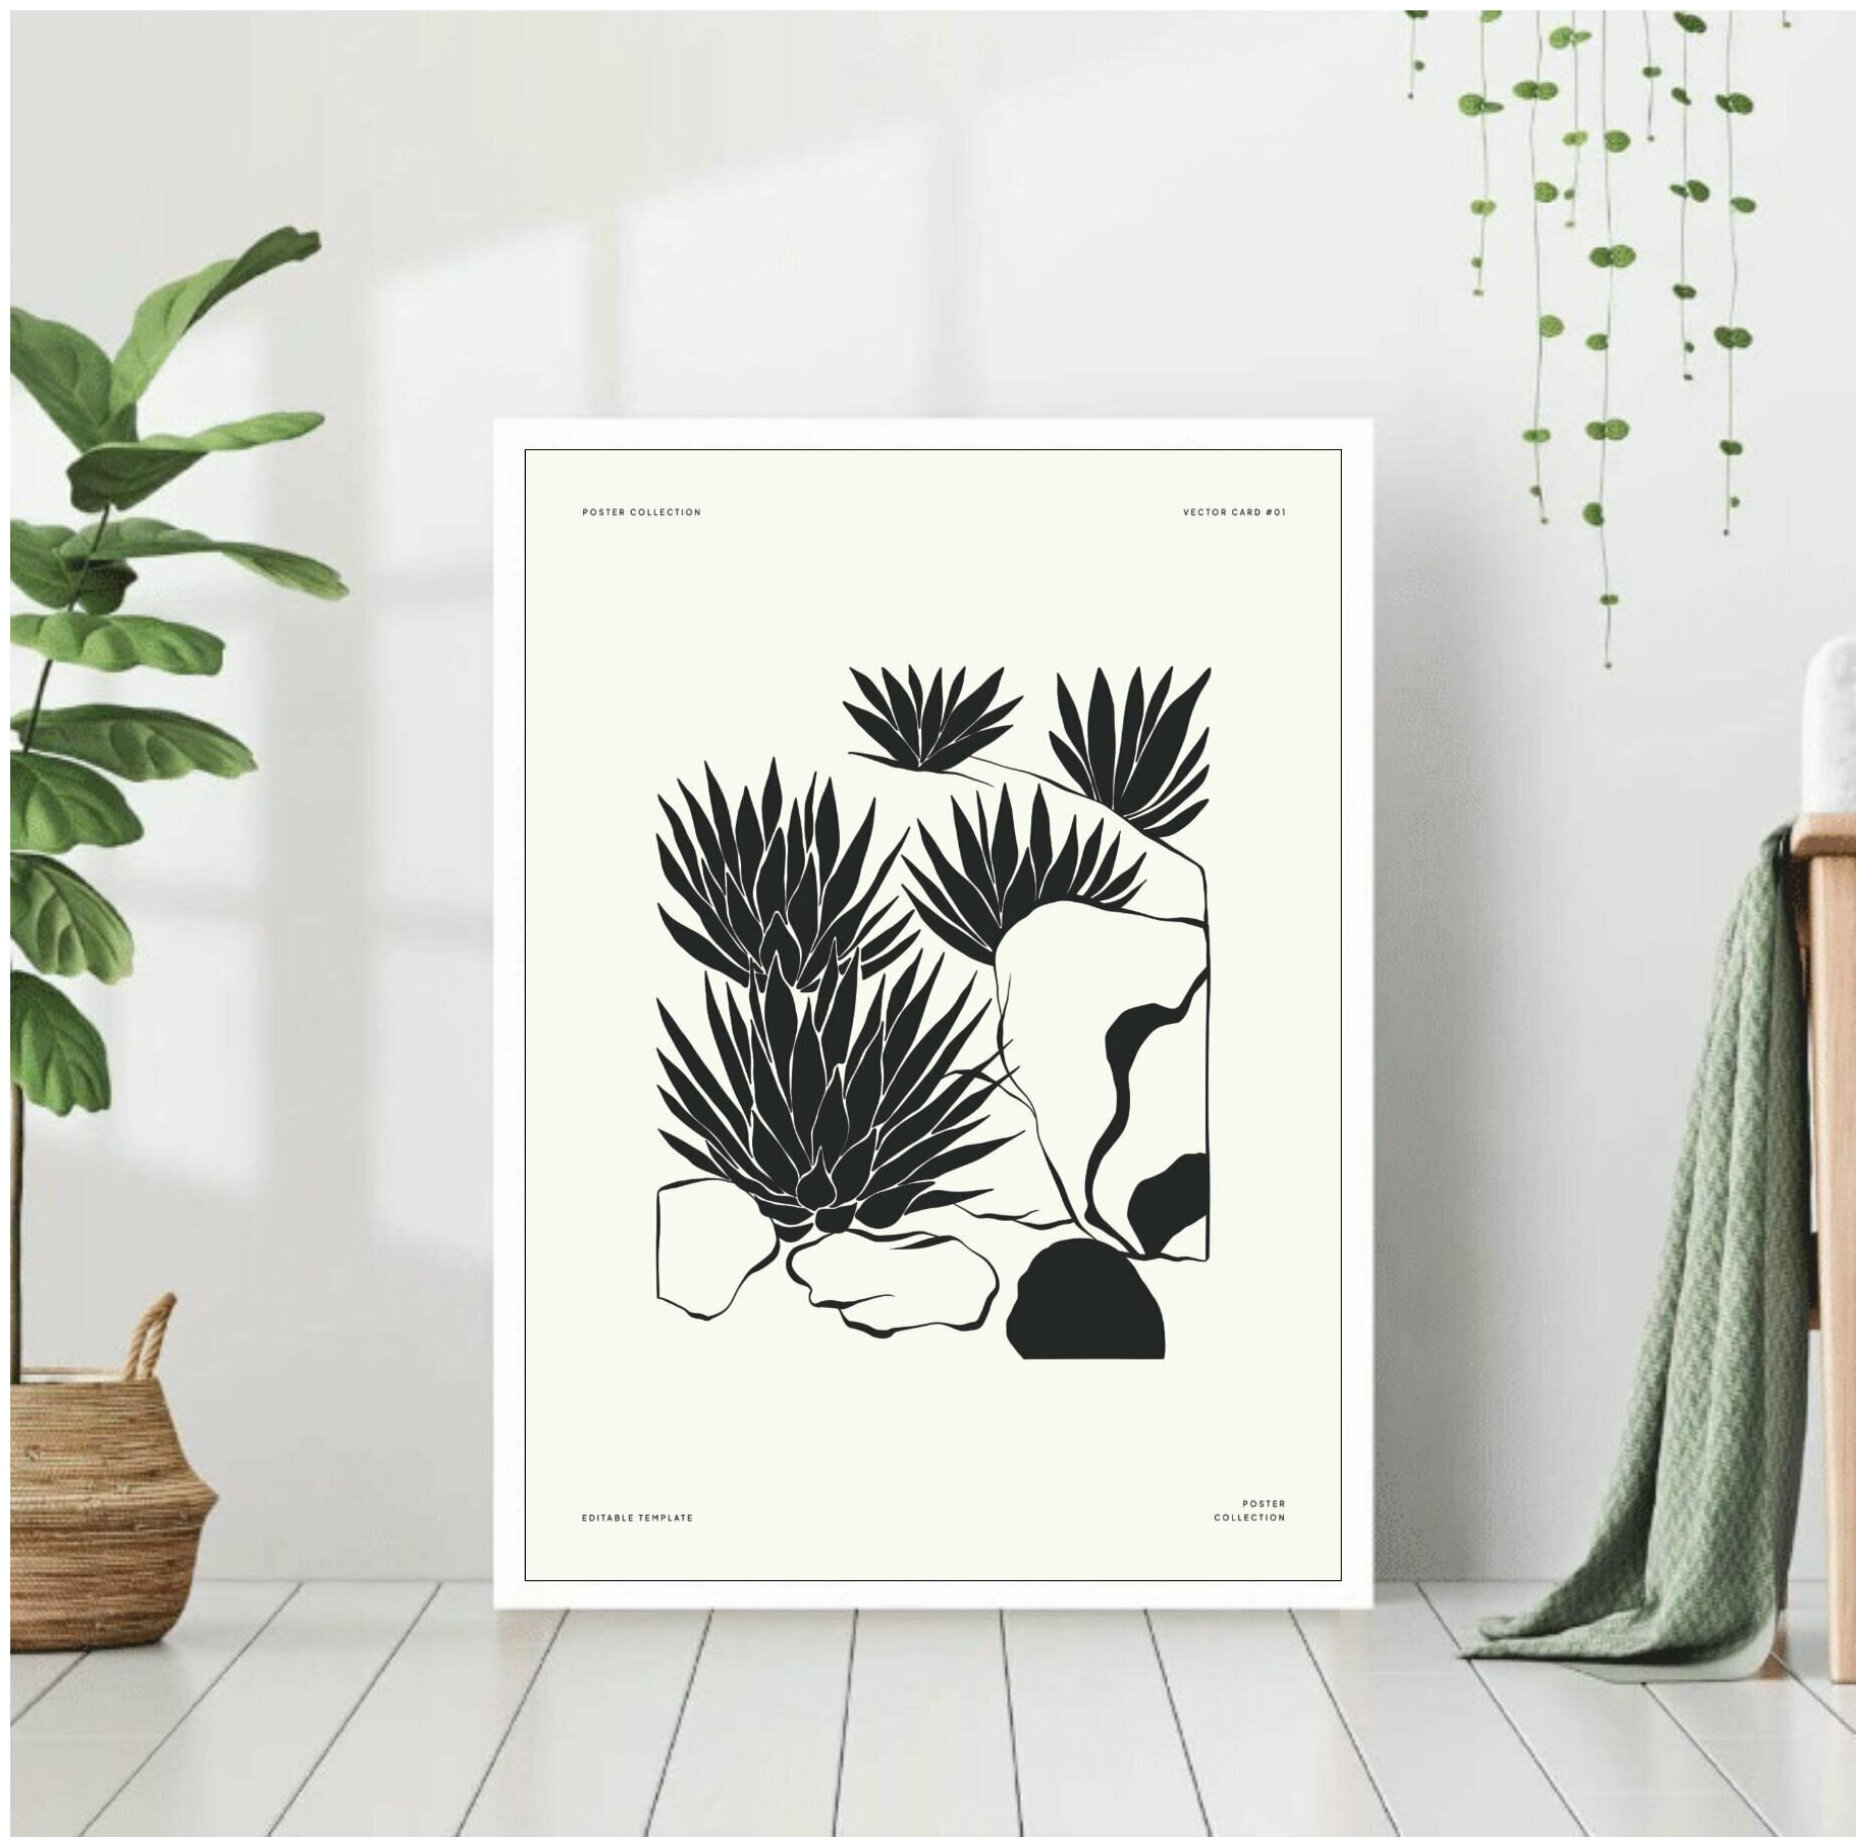 Постер "Растения агава" 40*50 в белой раме / Картина / Постеры для интерьера / Плакаты / Рамка